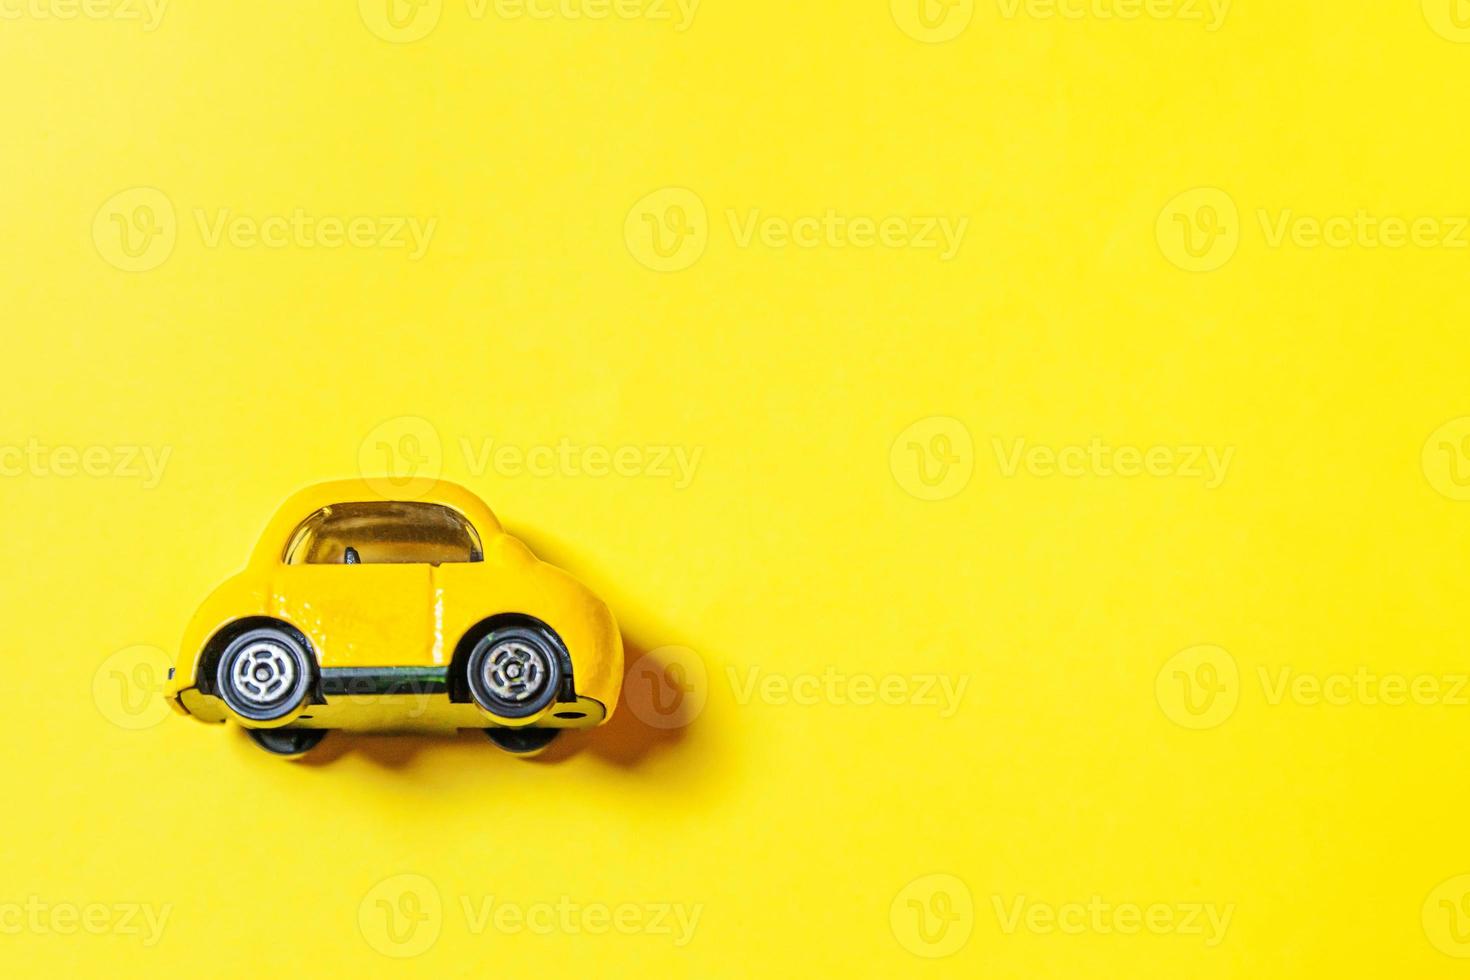 concevez simplement une voiture de jouet rétro vintage jaune isolée sur fond jaune. symbole de l'automobile et du transport. espace de copie du concept de livraison du trafic urbain photo